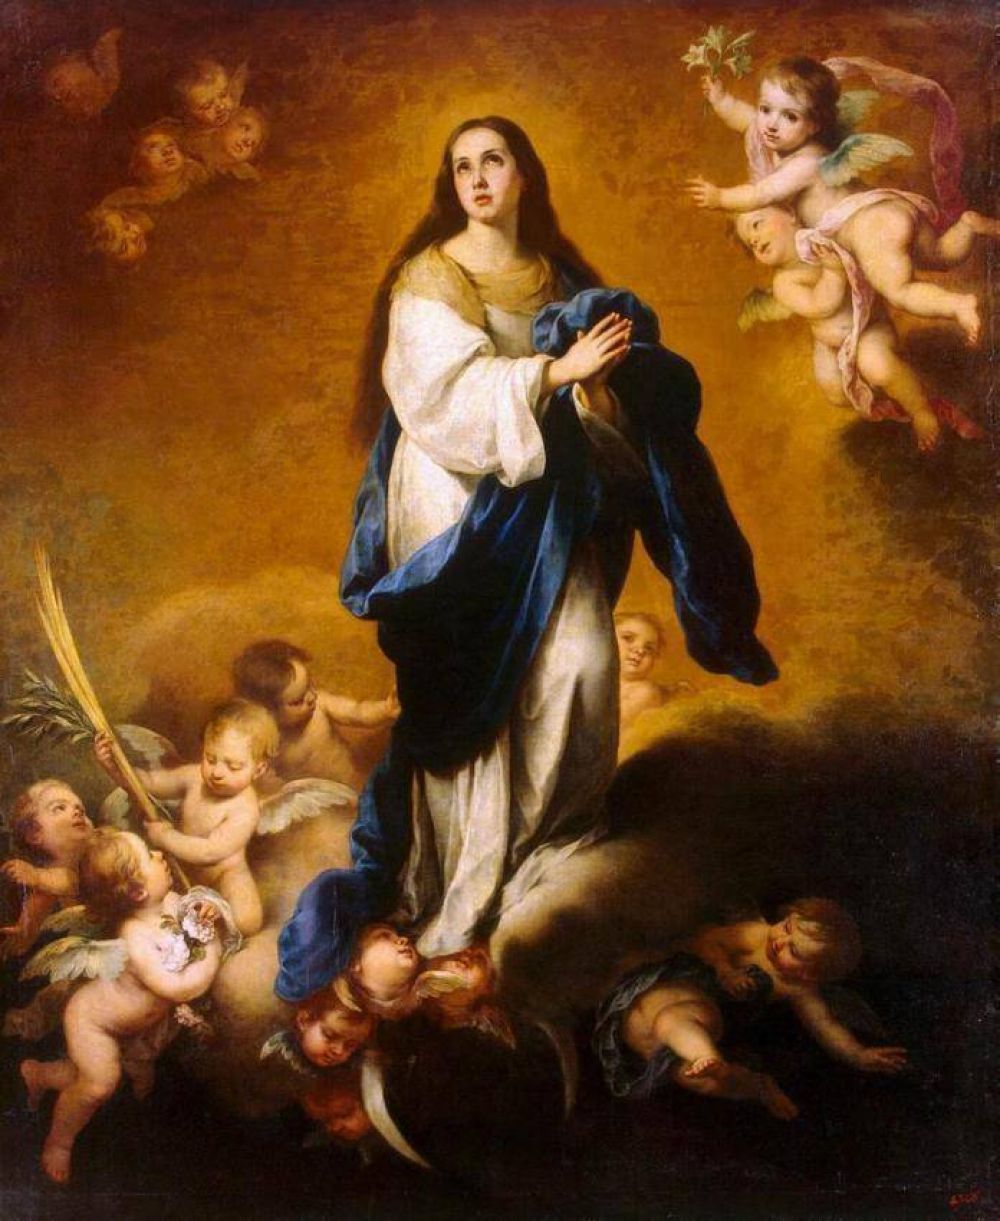 La Argentina honrará a la Inmaculada Concepción